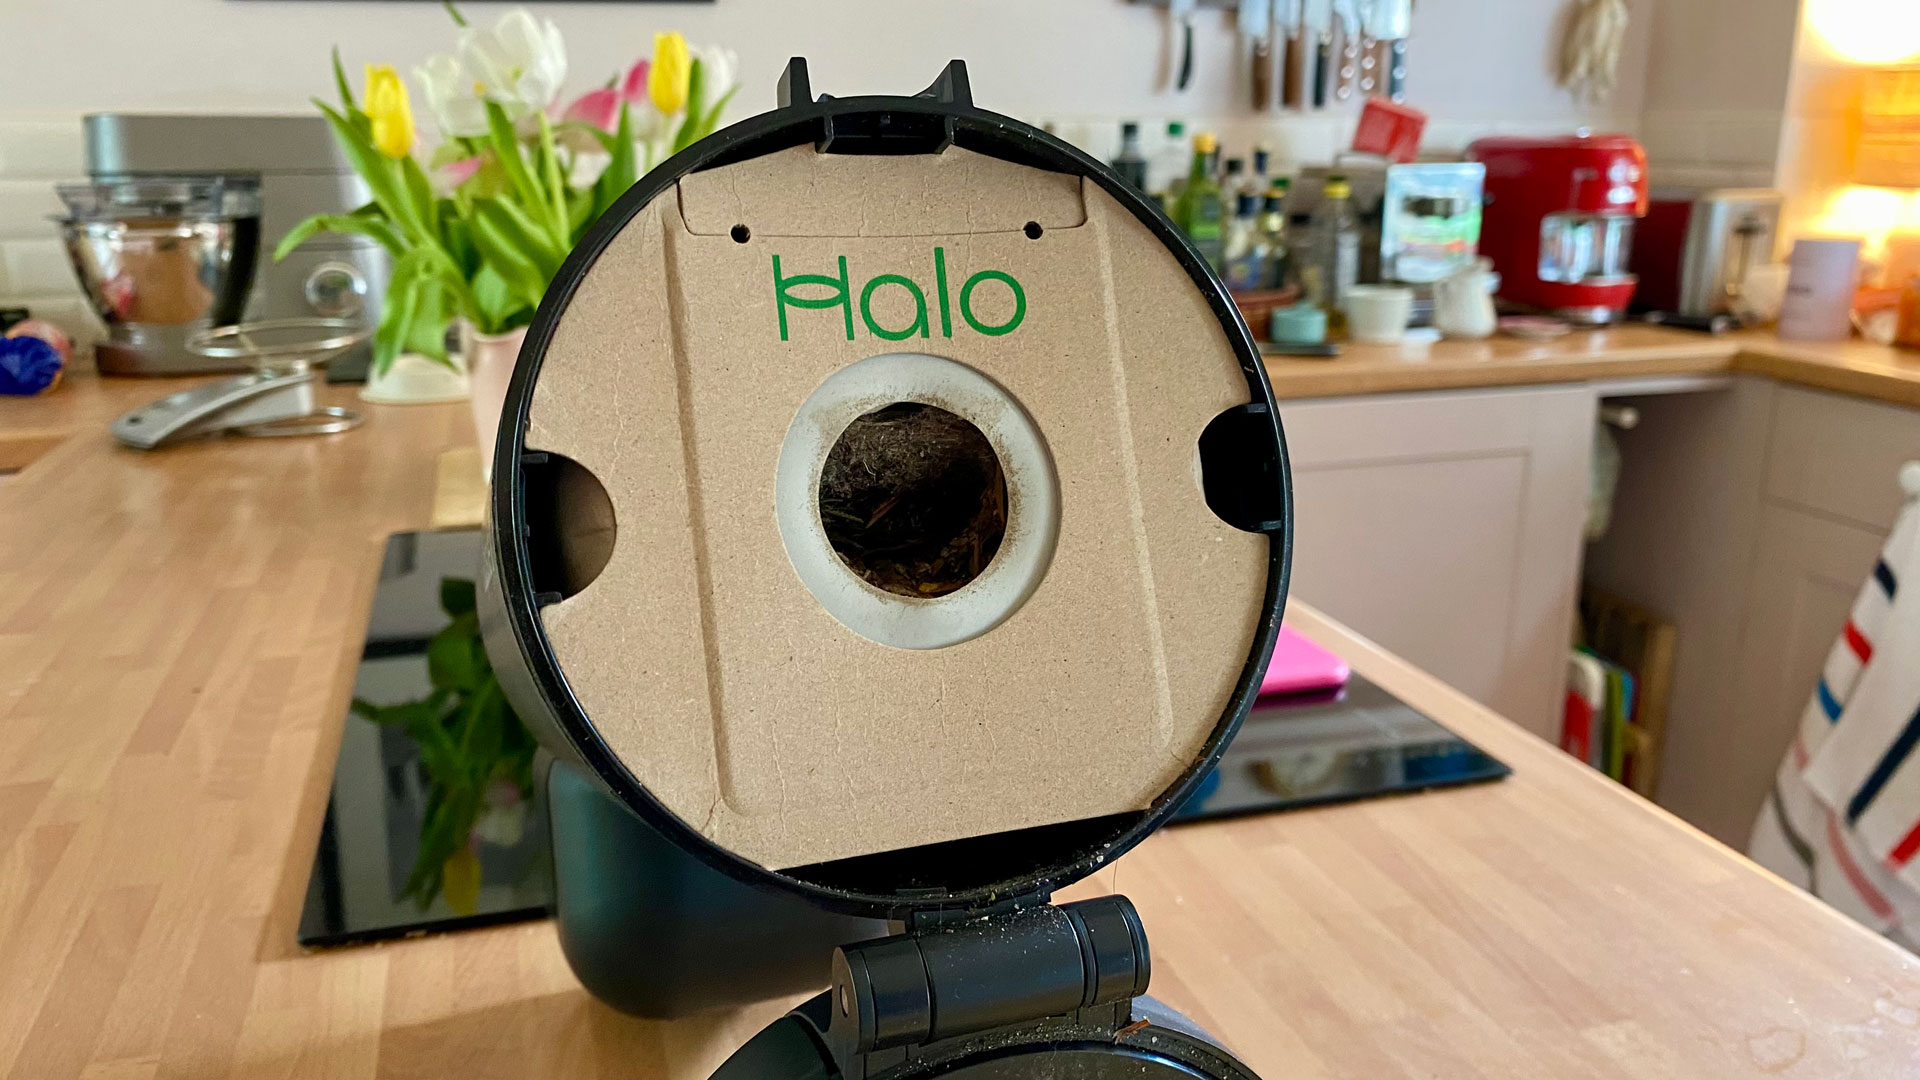 Halo Capsule X Pet Max vacuum cleaner dust bag